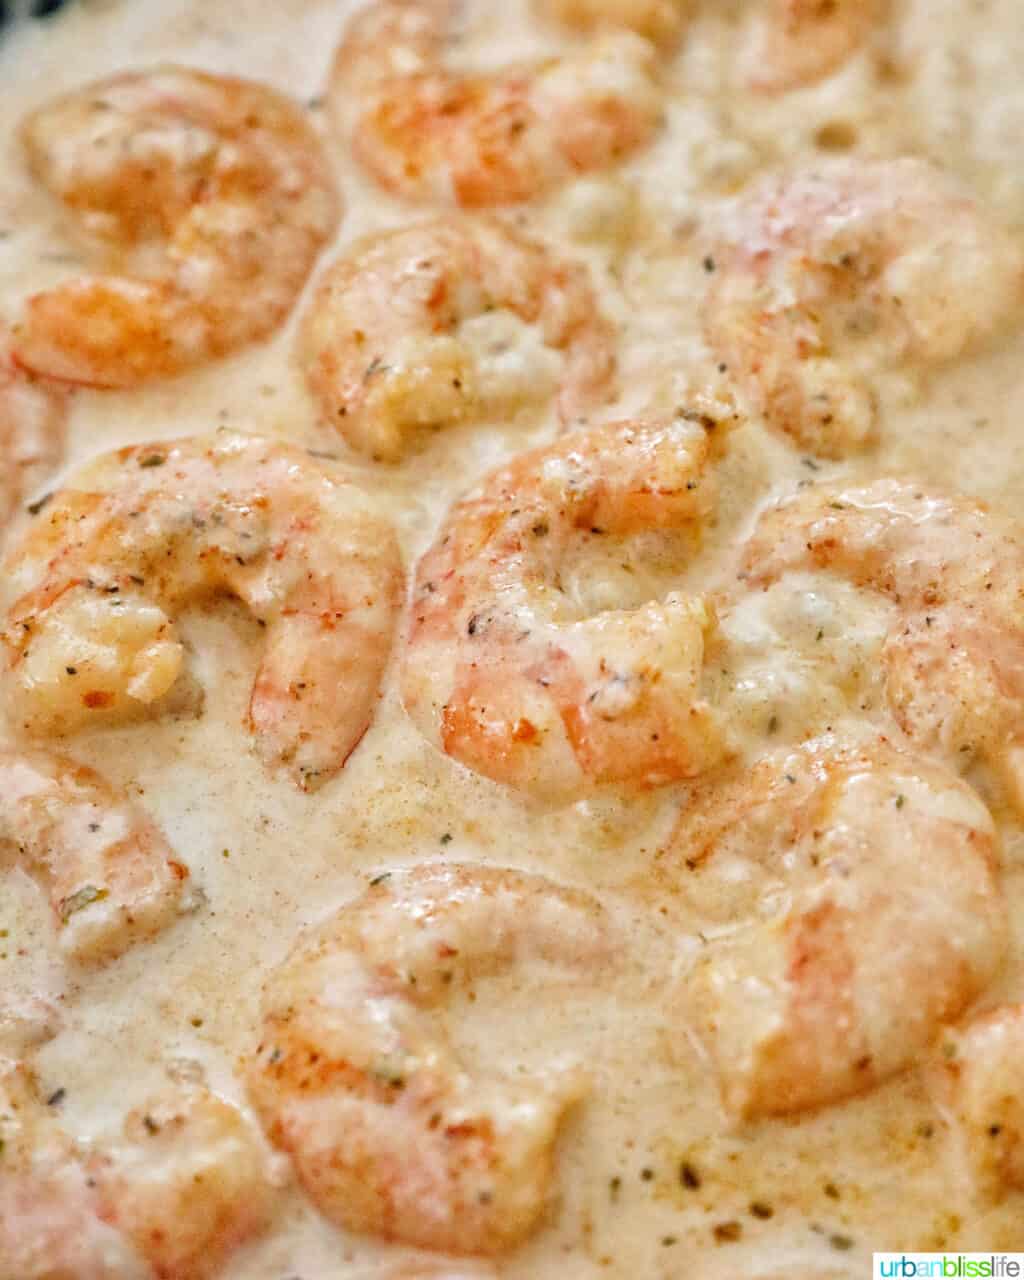 adding cream to the cajun shrimp pasta in the pan